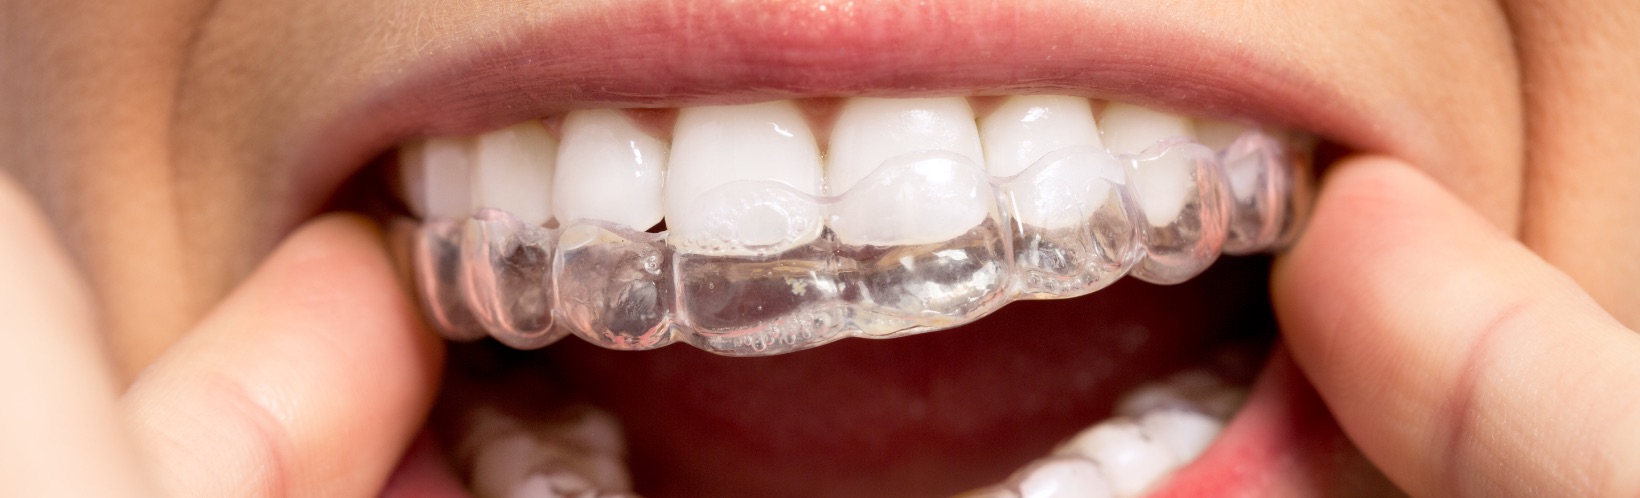 Studio Dentistico Rossi Zanon | Ortodonzia